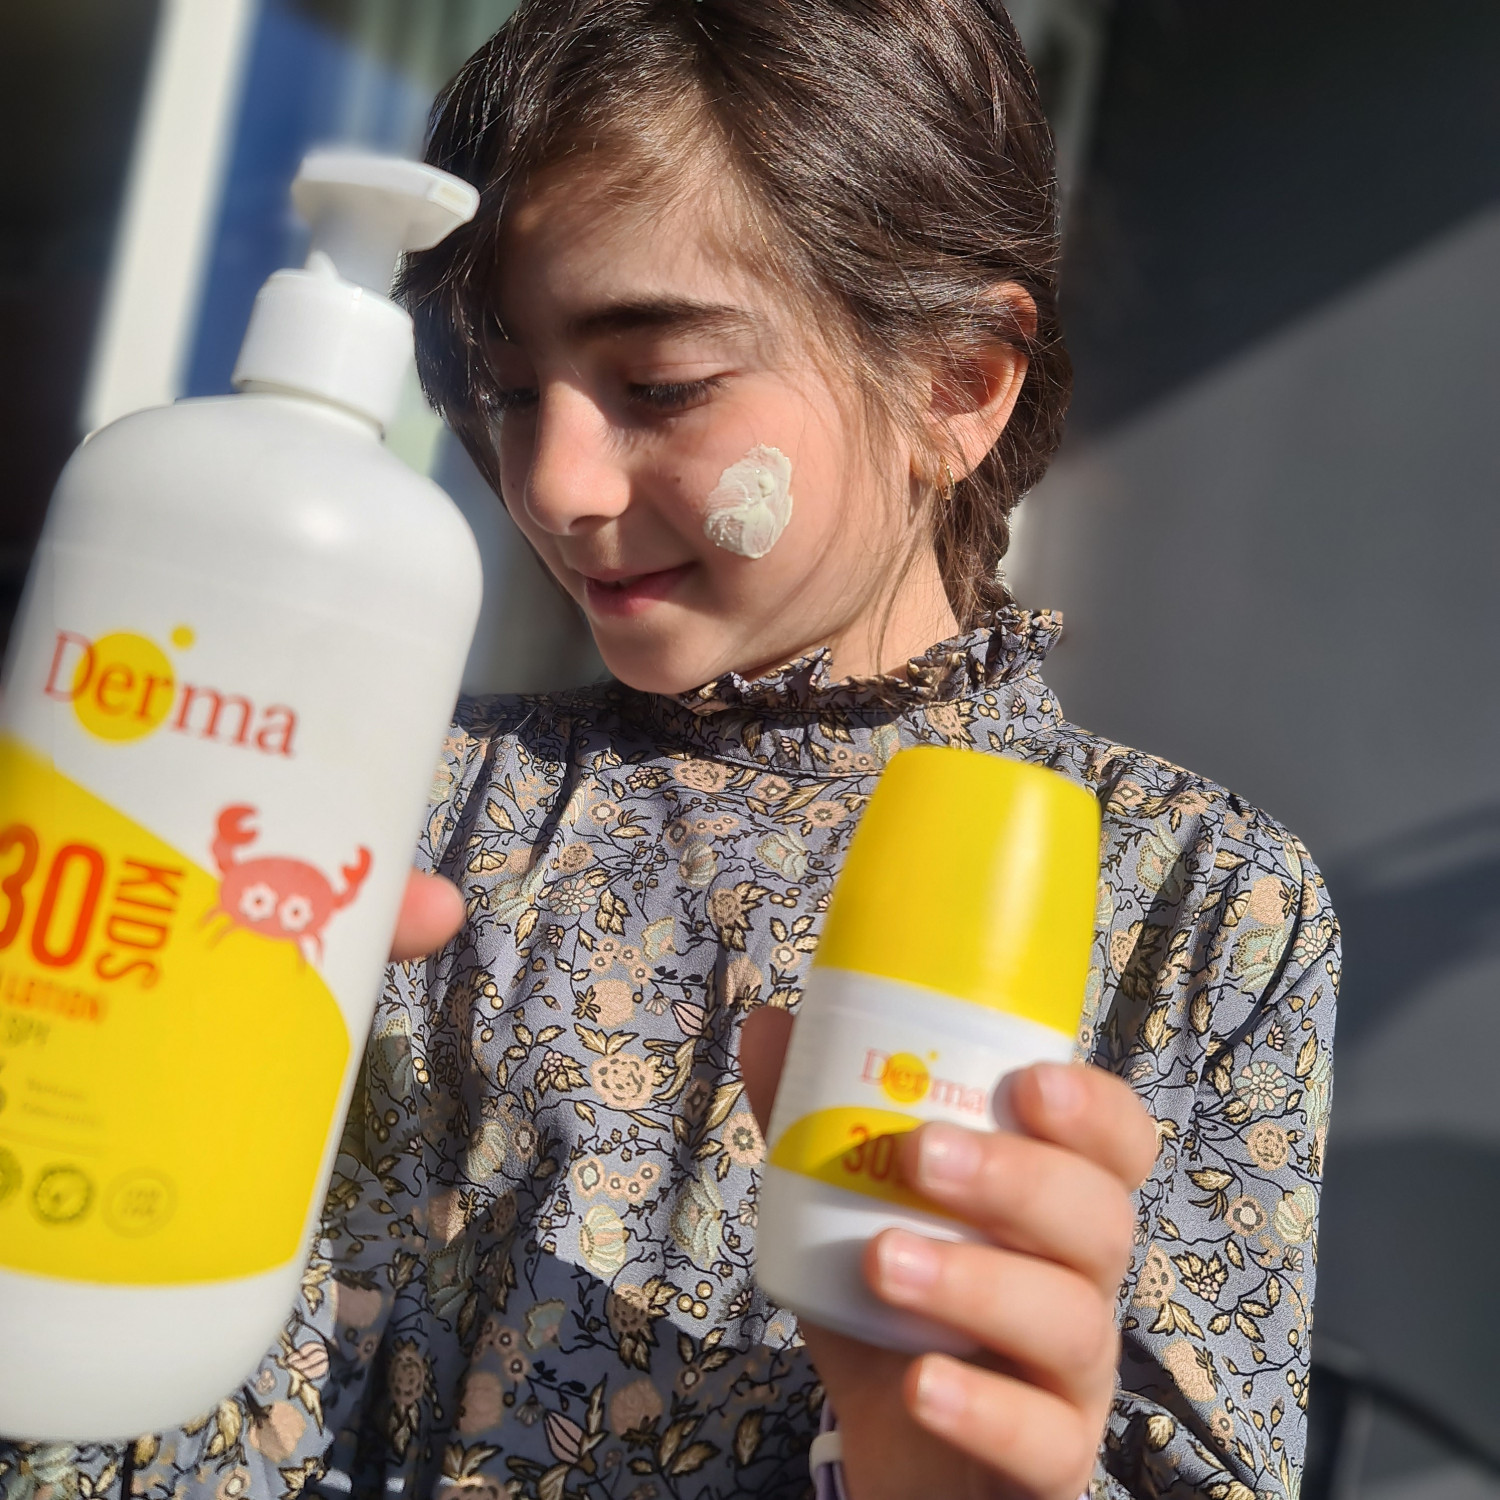 fordomme Ekstremt vigtigt bryder ud TEST af Derma solprodukter | Baby | Testfamilien